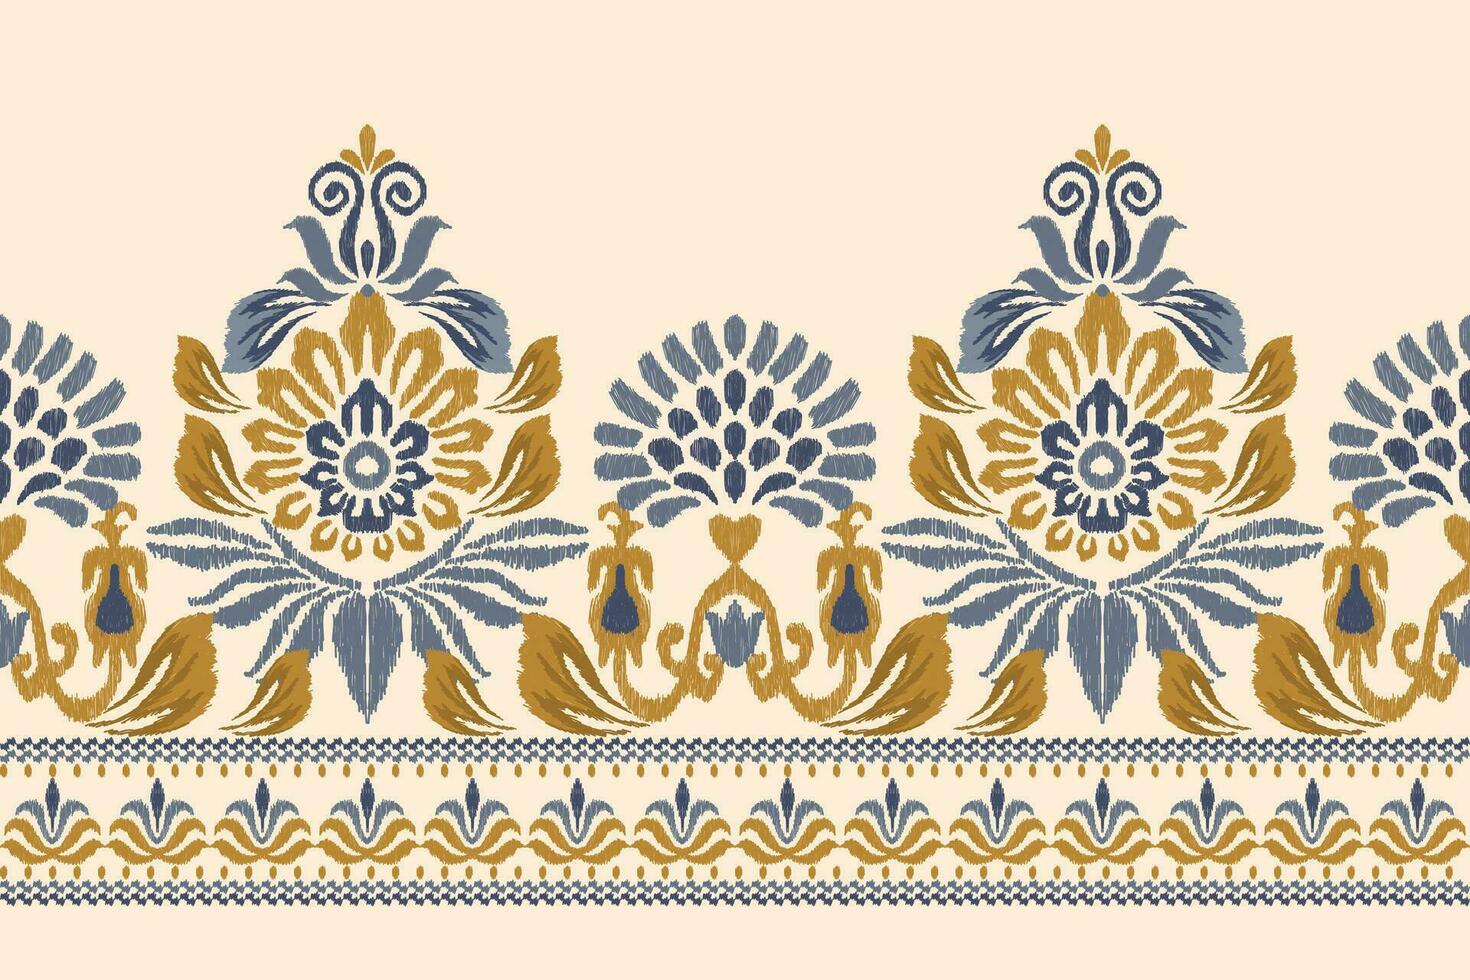 ikat floral paisley broderie sur crème background.ikat ethnique Oriental modèle traditionnel.aztèque style abstrait vecteur illustration.design pour texture, tissu, vêtements, emballage, décoration, sarong, écharpe